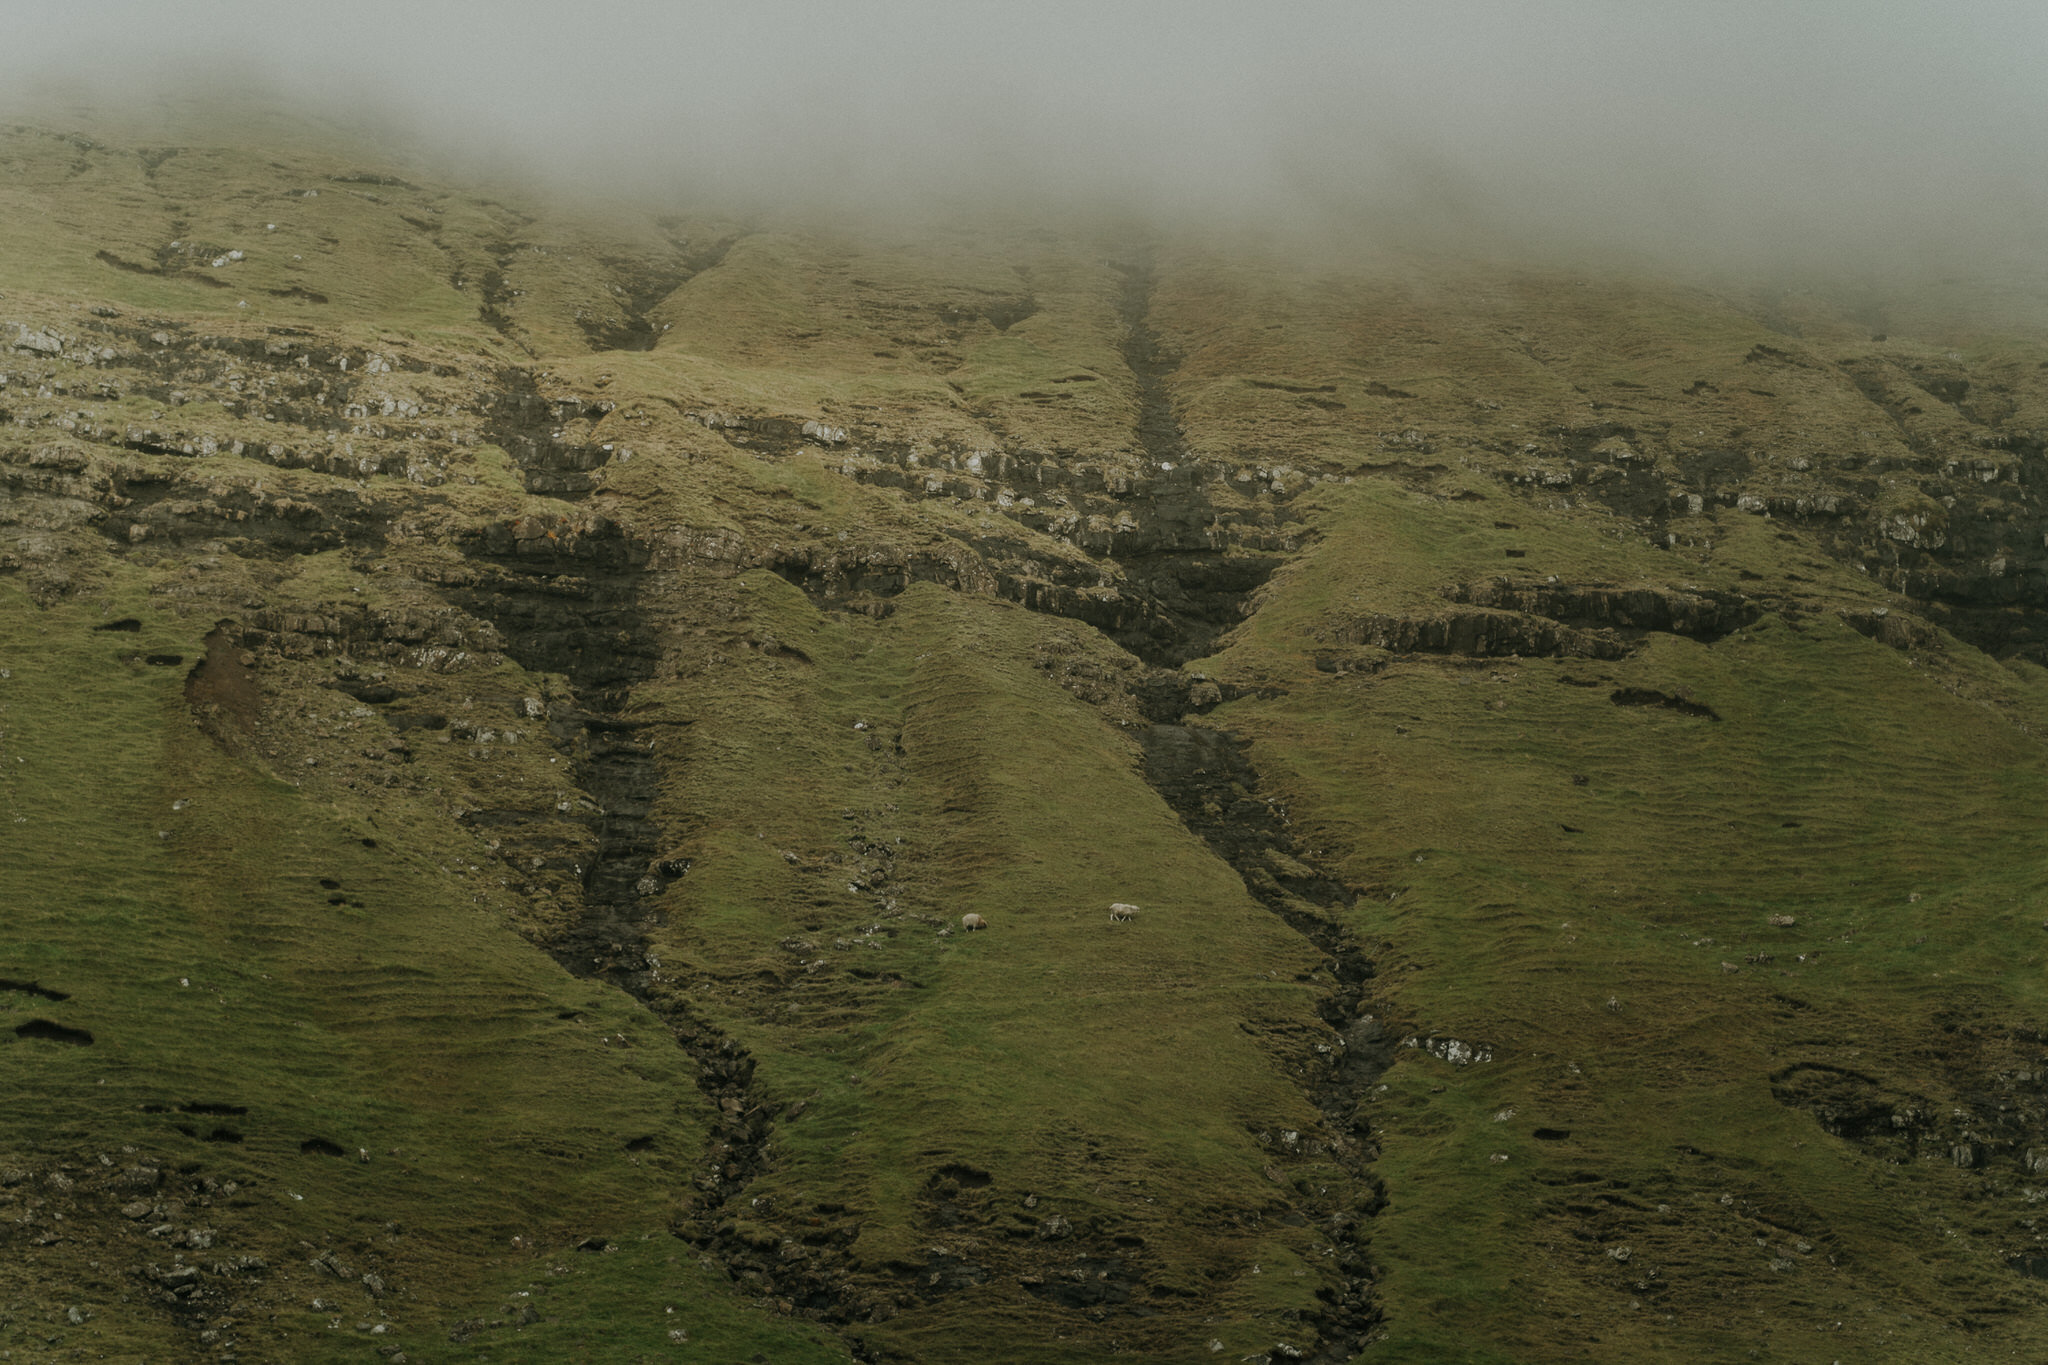  Địa hình của Faroes rất gồ ghề và nhiều núi, phản ánh khí hậu đại dương cận Bắc cực của các hòn đảo: gió (gió kinh khủng), ẩm ướt, nhiều mây và mát mẻ. Mặc dù có vĩ độ cao phía bắc, nhiệt độ trung bình vẫn ở trên mức đóng băng trong suốt cả năm do c